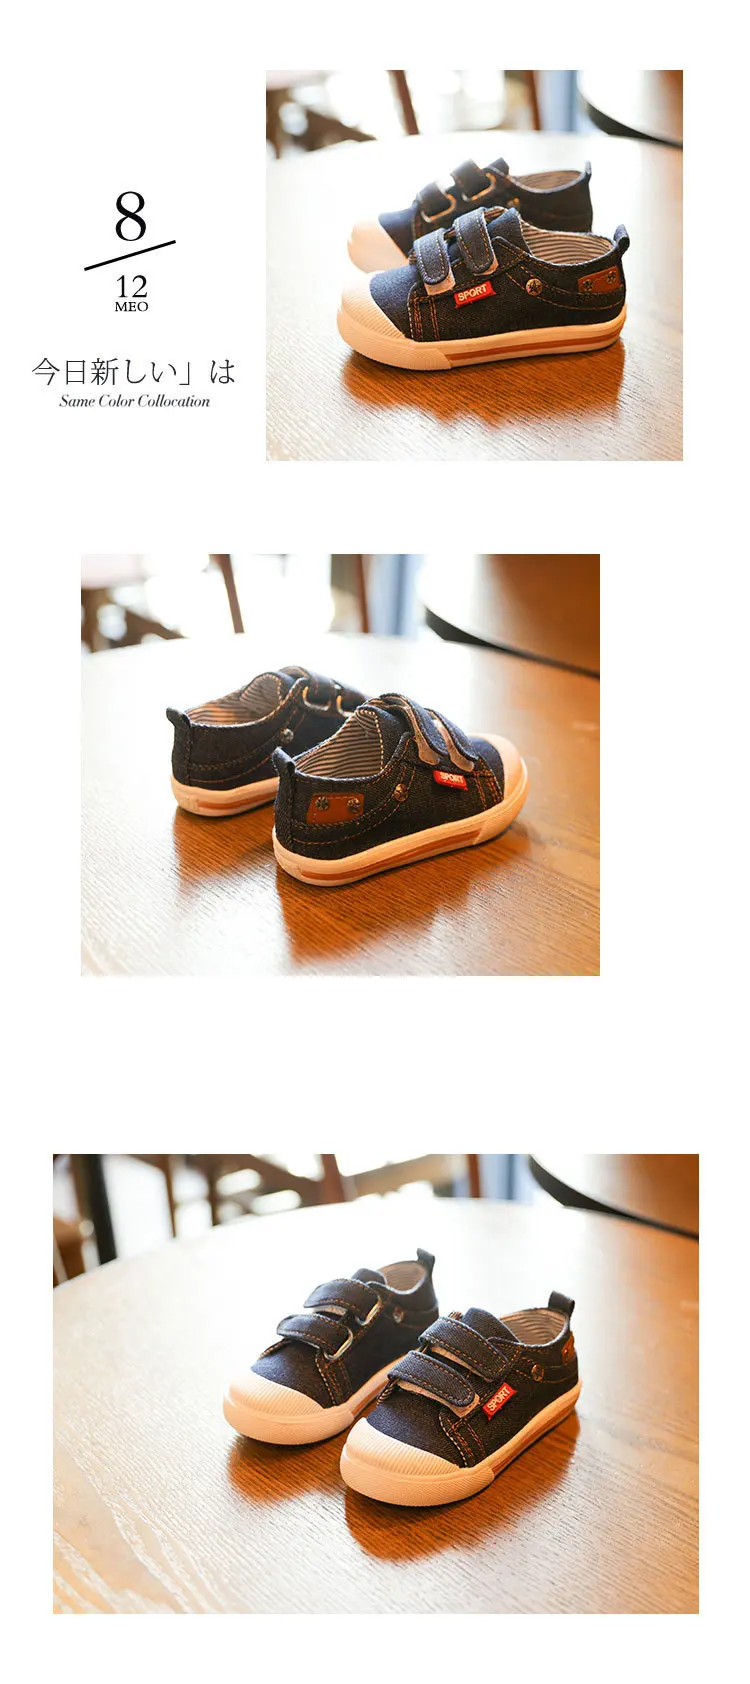 Mumoresip/детская обувь для девочек и мальчиков; кроссовки; джинсы; парусиновая детская обувь; Джинсовая спортивная обувь для бега; модные детские кроссовки; повседневная обувь